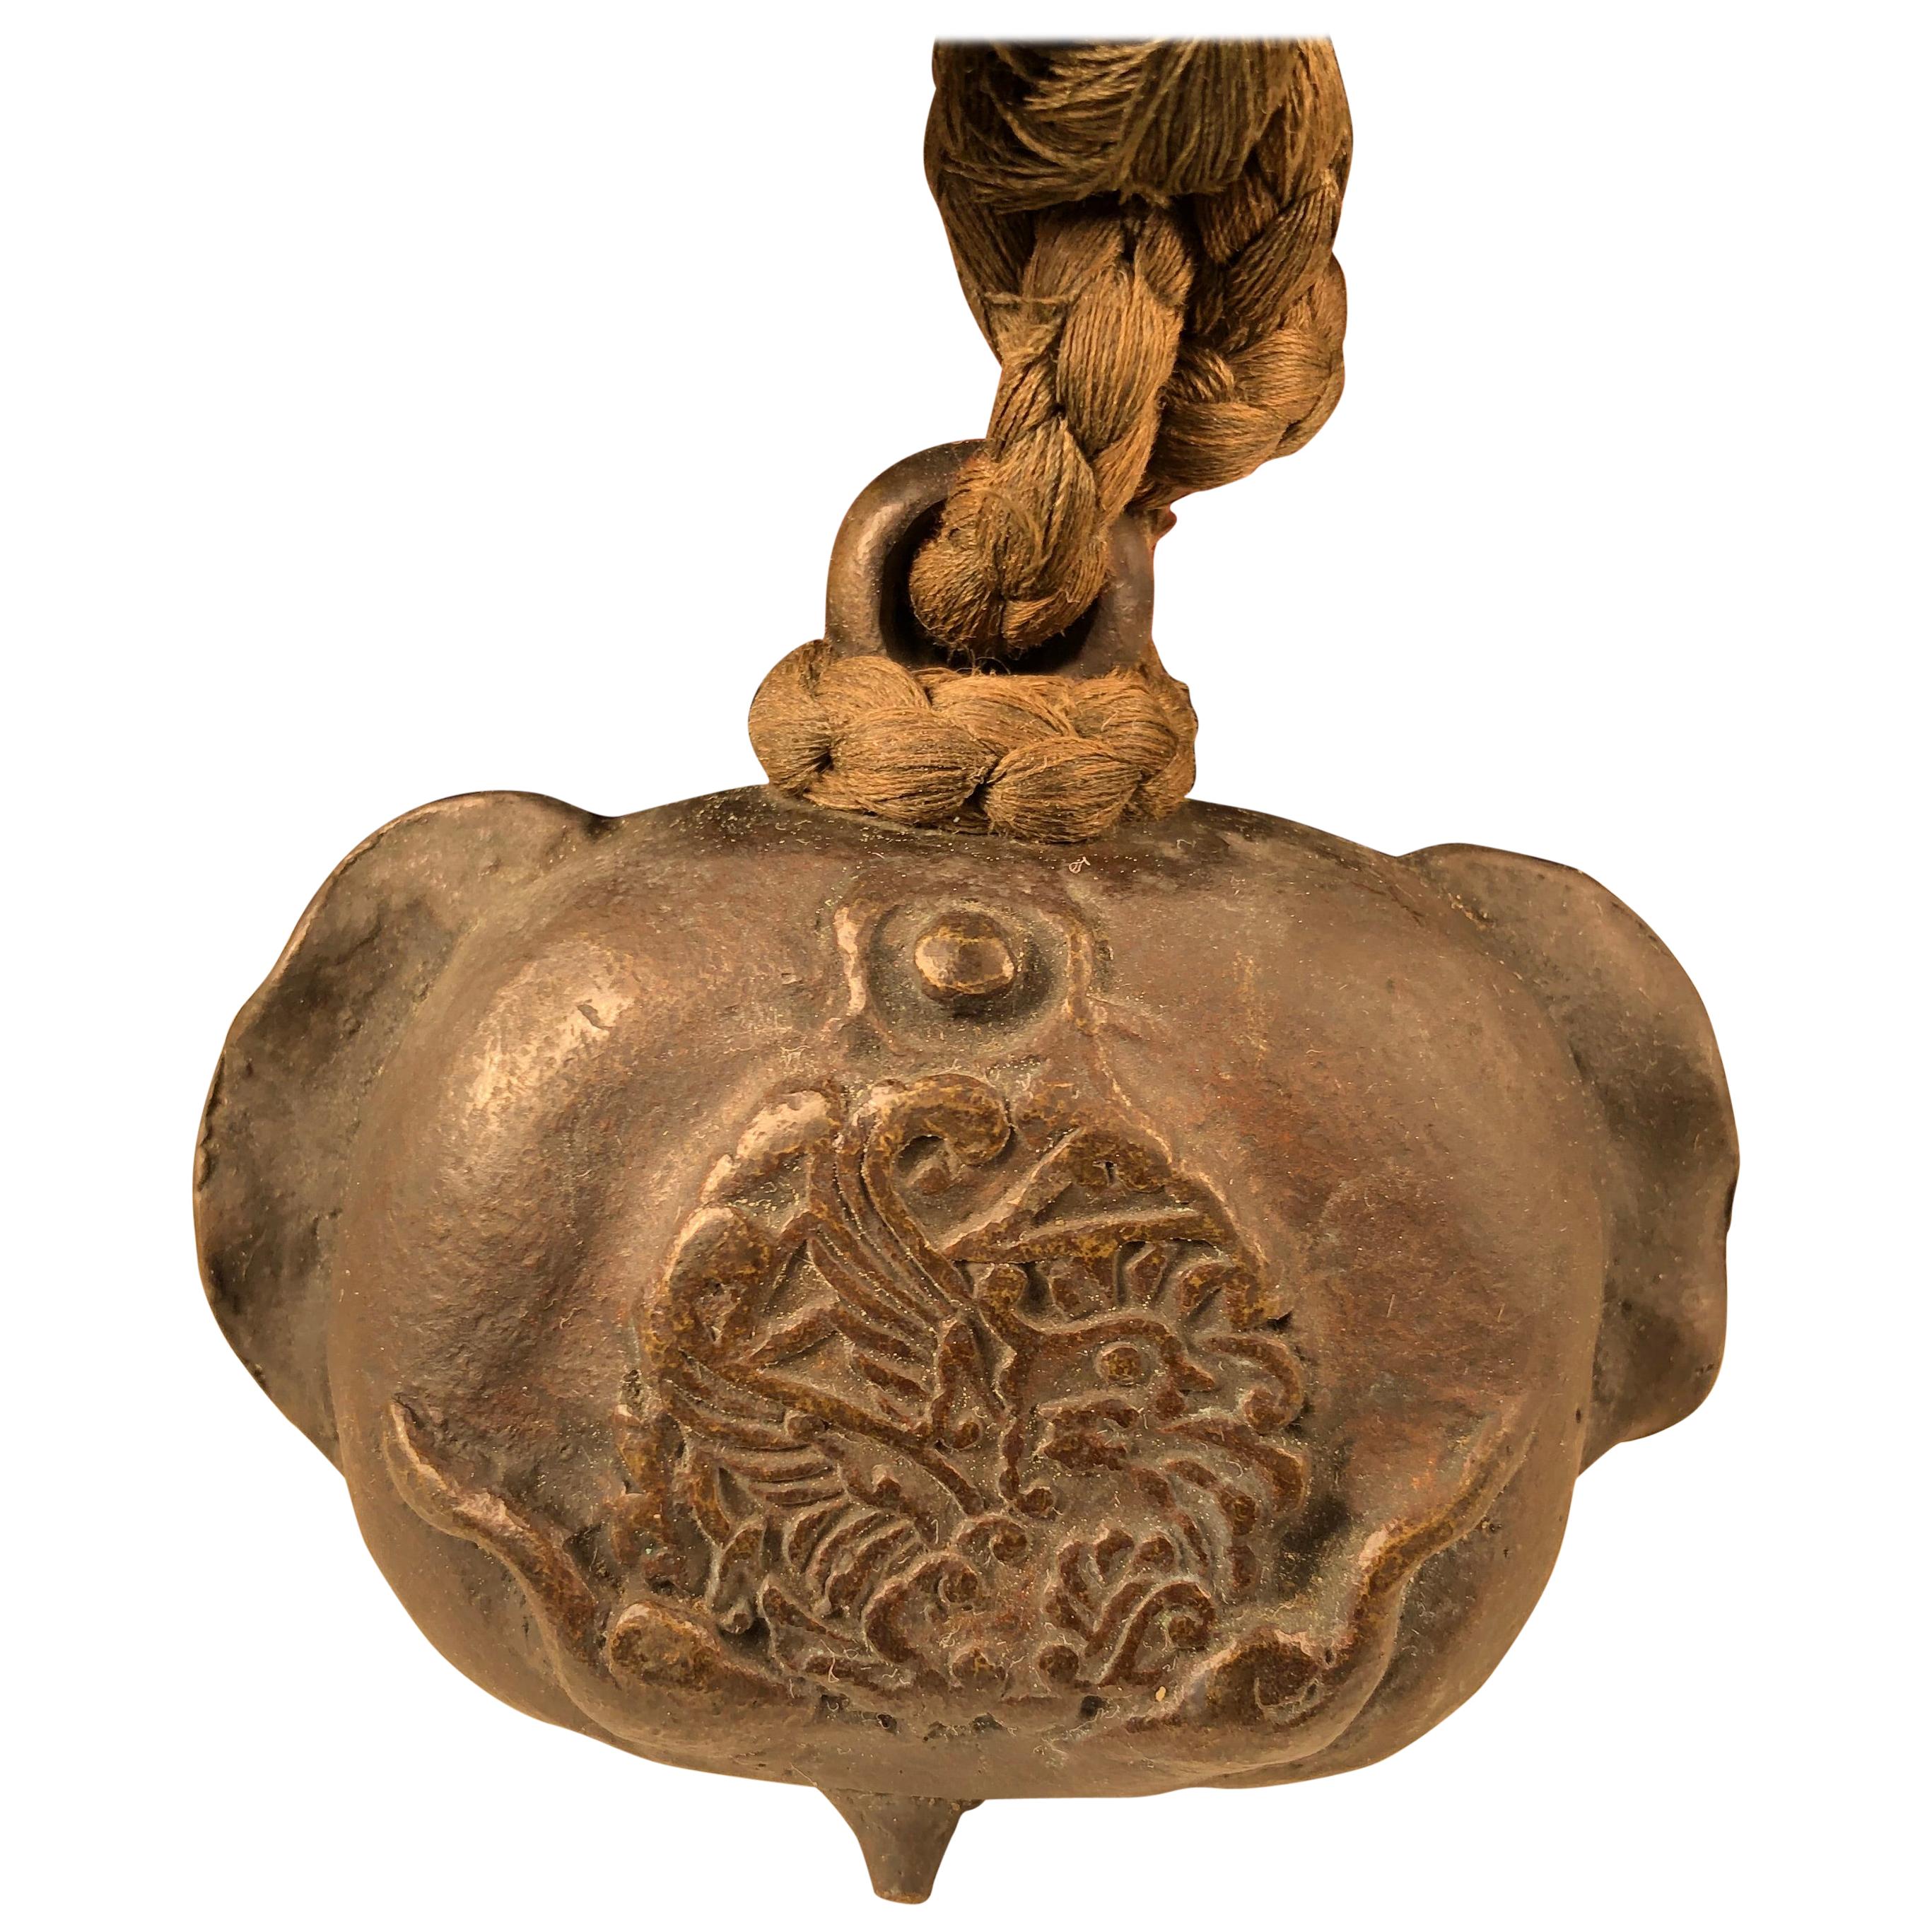 Japanese Antique Bird "Tea Lovers" Bronze Hand Bell 19th Century, Gentle Sound